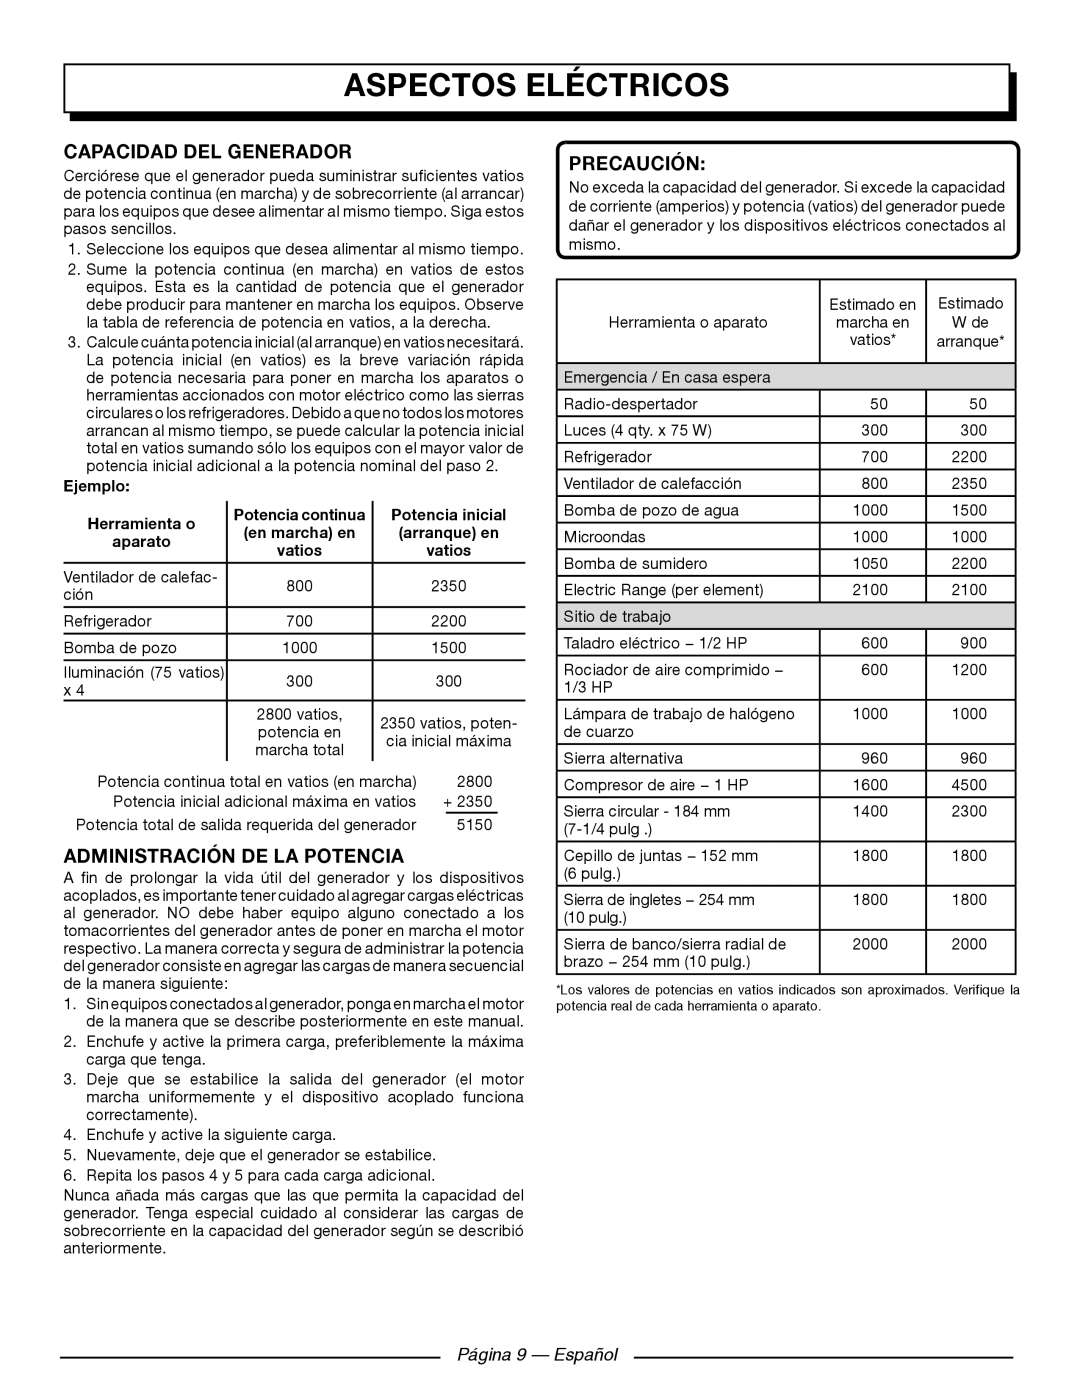 Homelite UT902250 Capacidad Del Generador, Administración De La Potencia, Página 9 — Español, Aspectos Eléctricos 